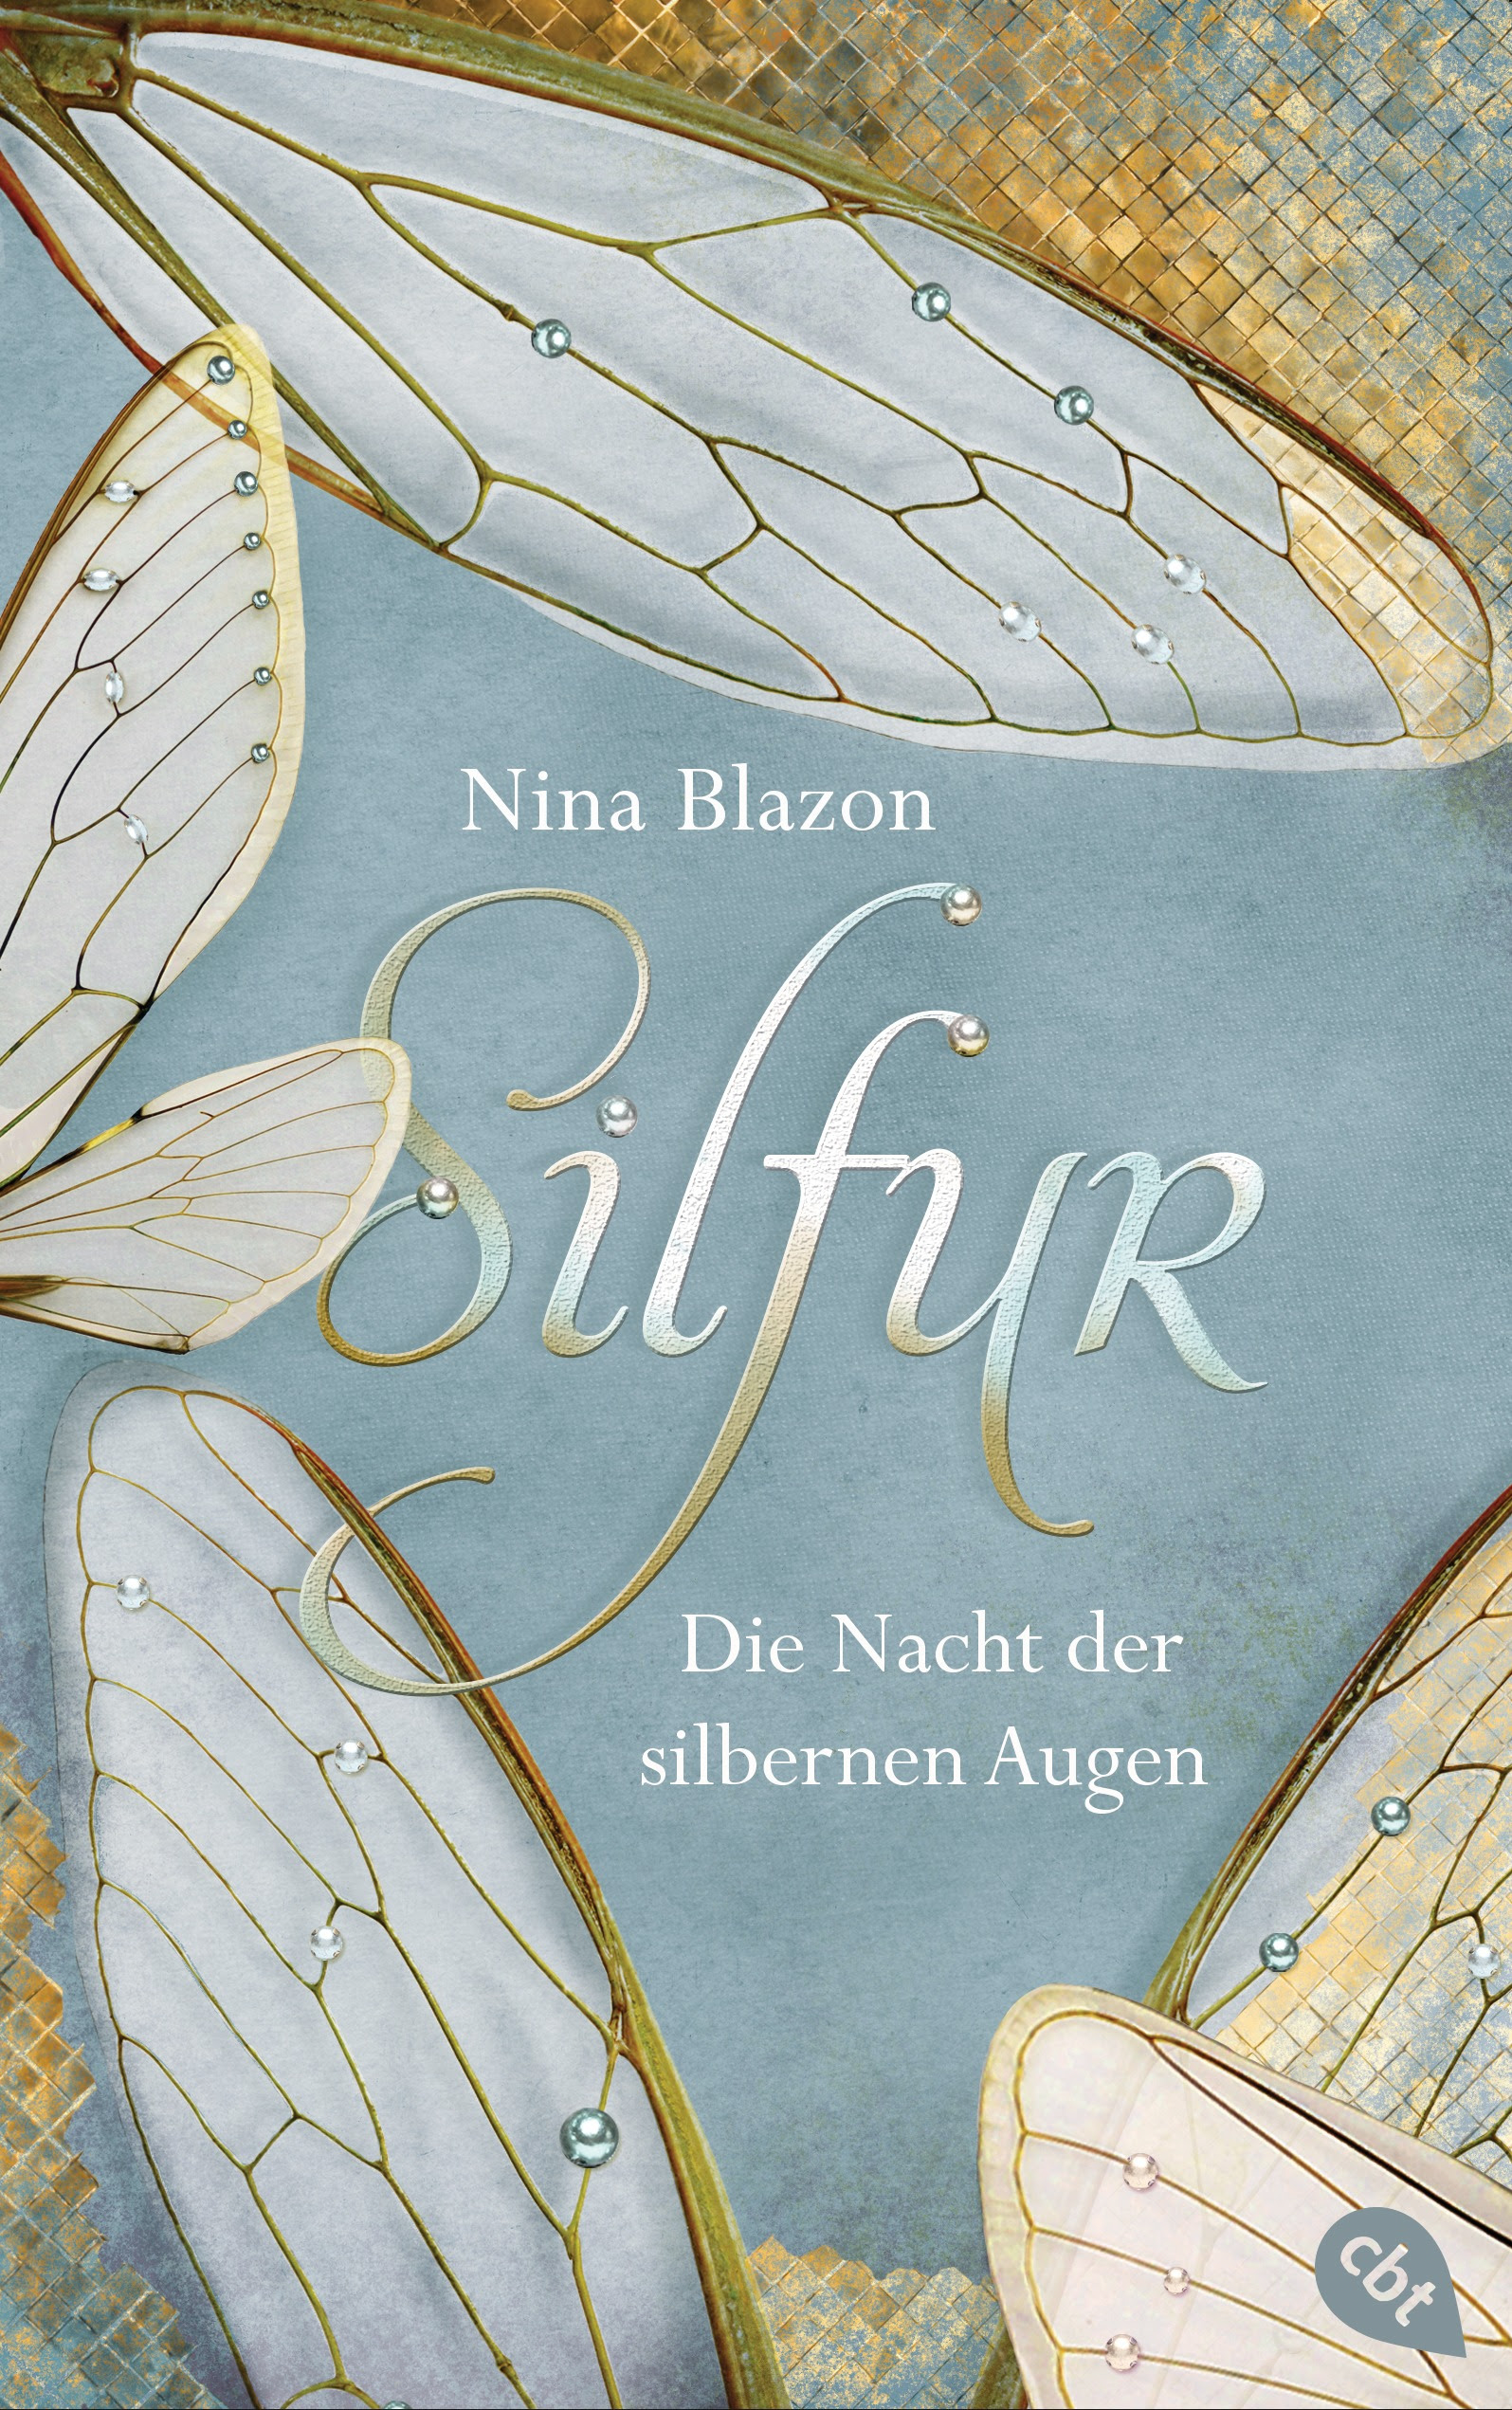 http://www.randomhouse.de/Buch/Silfur-Die-Nacht-der-silbernen-Augen/Nina-Blazon/cbt/e456097.rhd